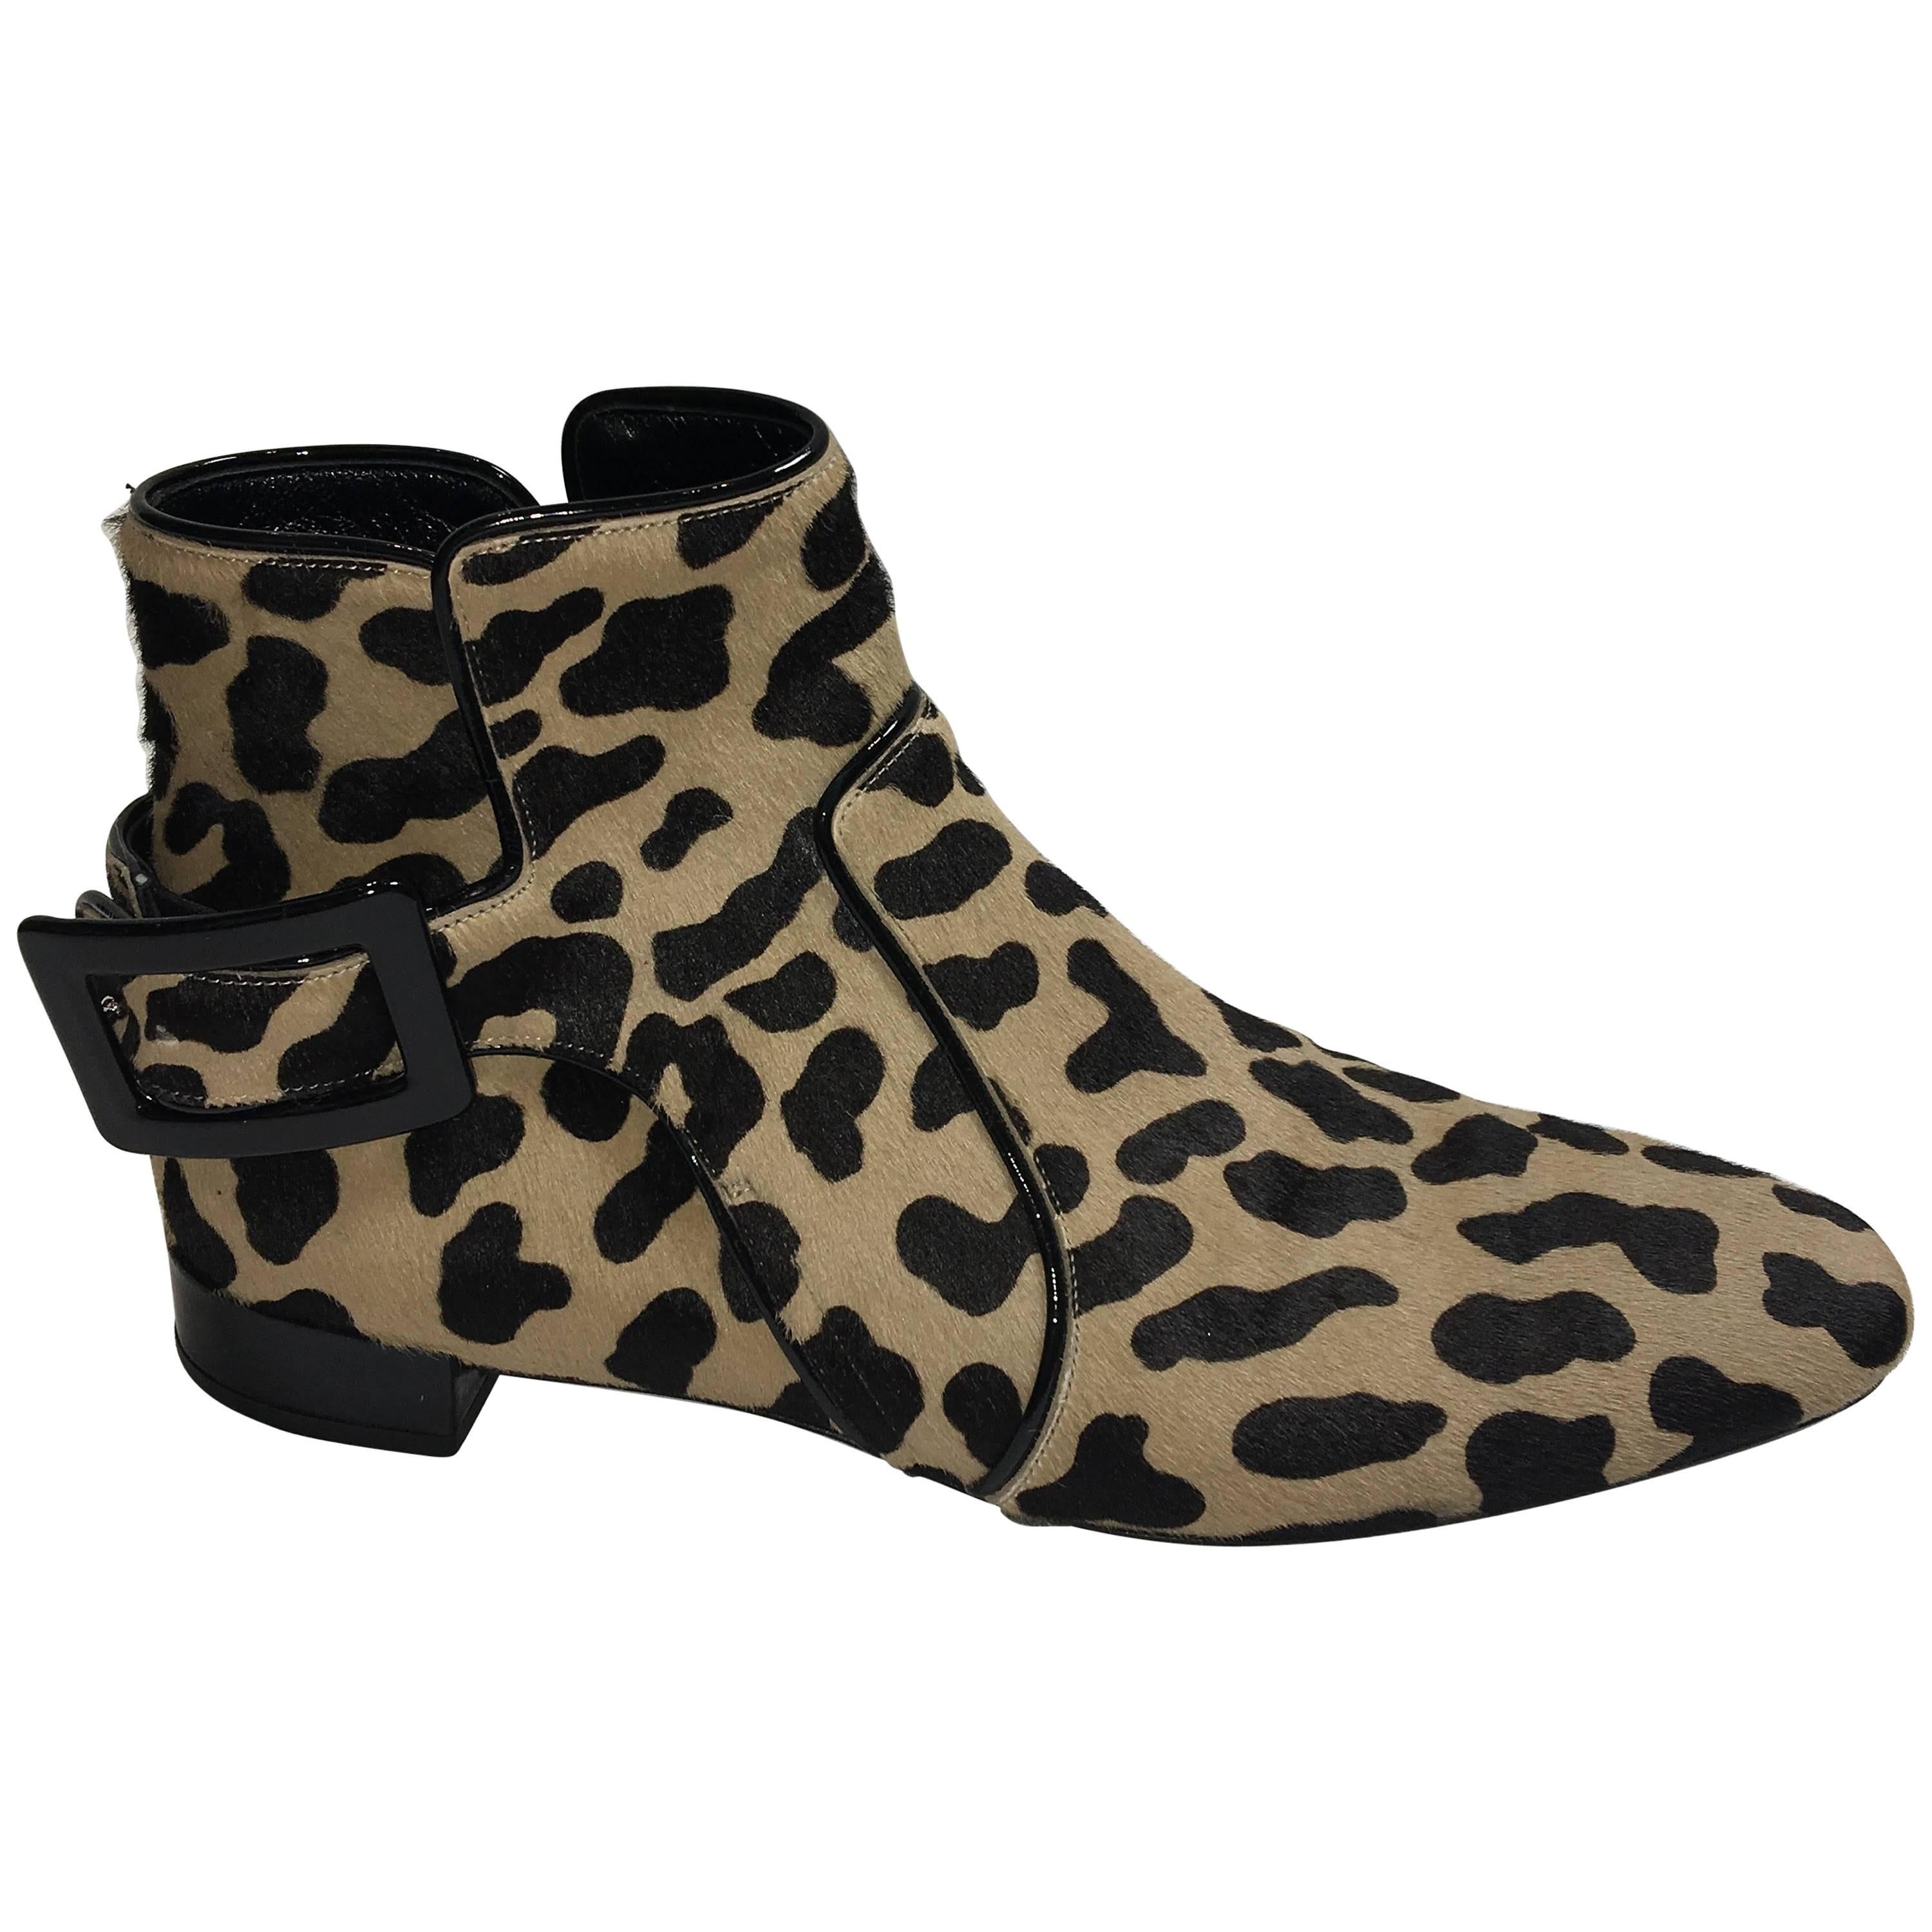 Roger Vivier Leopard Booties